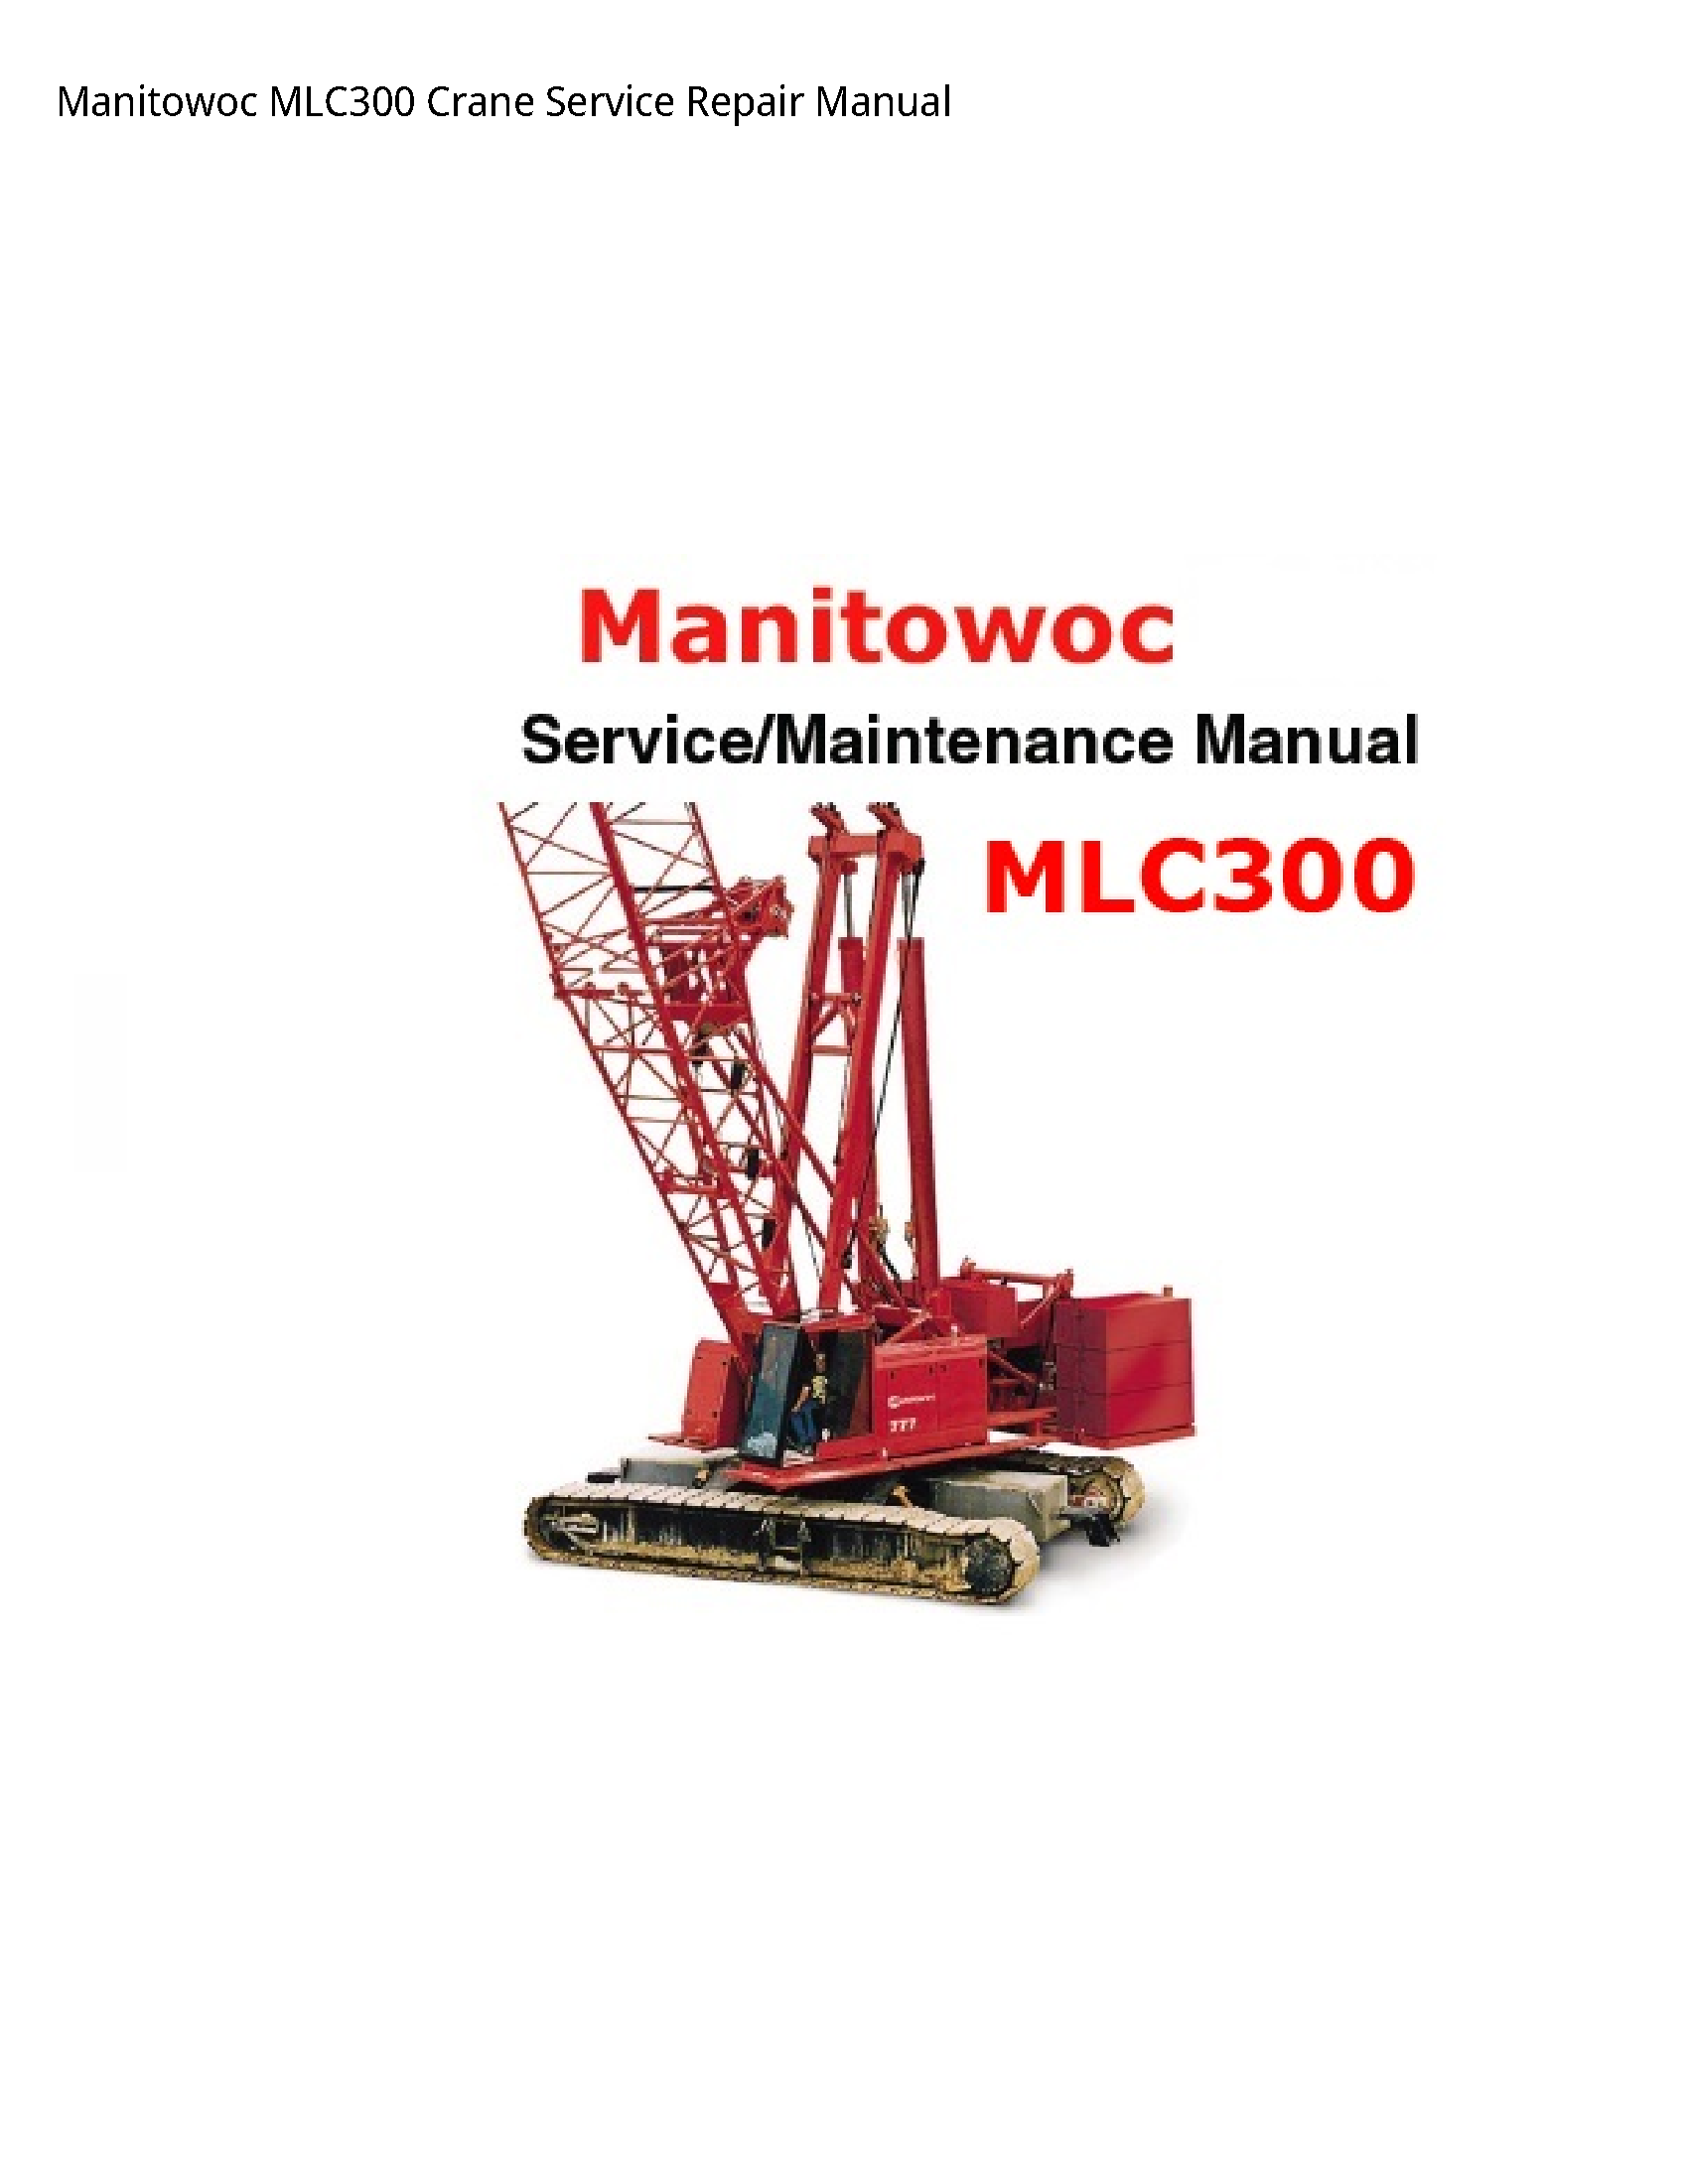 Manitowoc MLC300 Crane manual